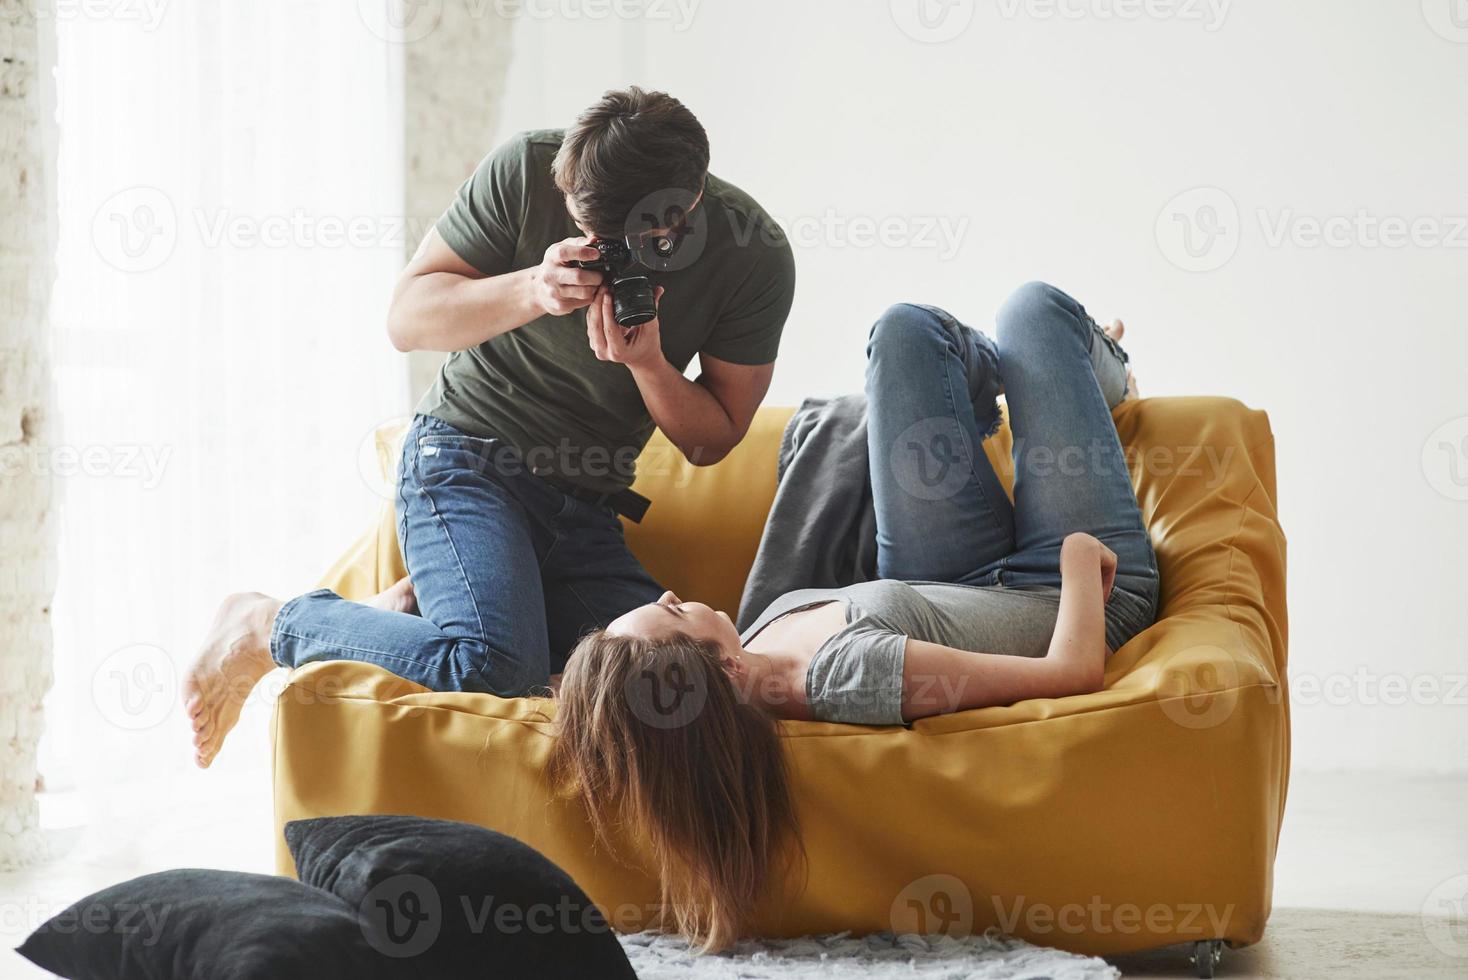 fortsätt se ut så. fotograf tar en bild av ung flicka som ligger på den vita soffan foto